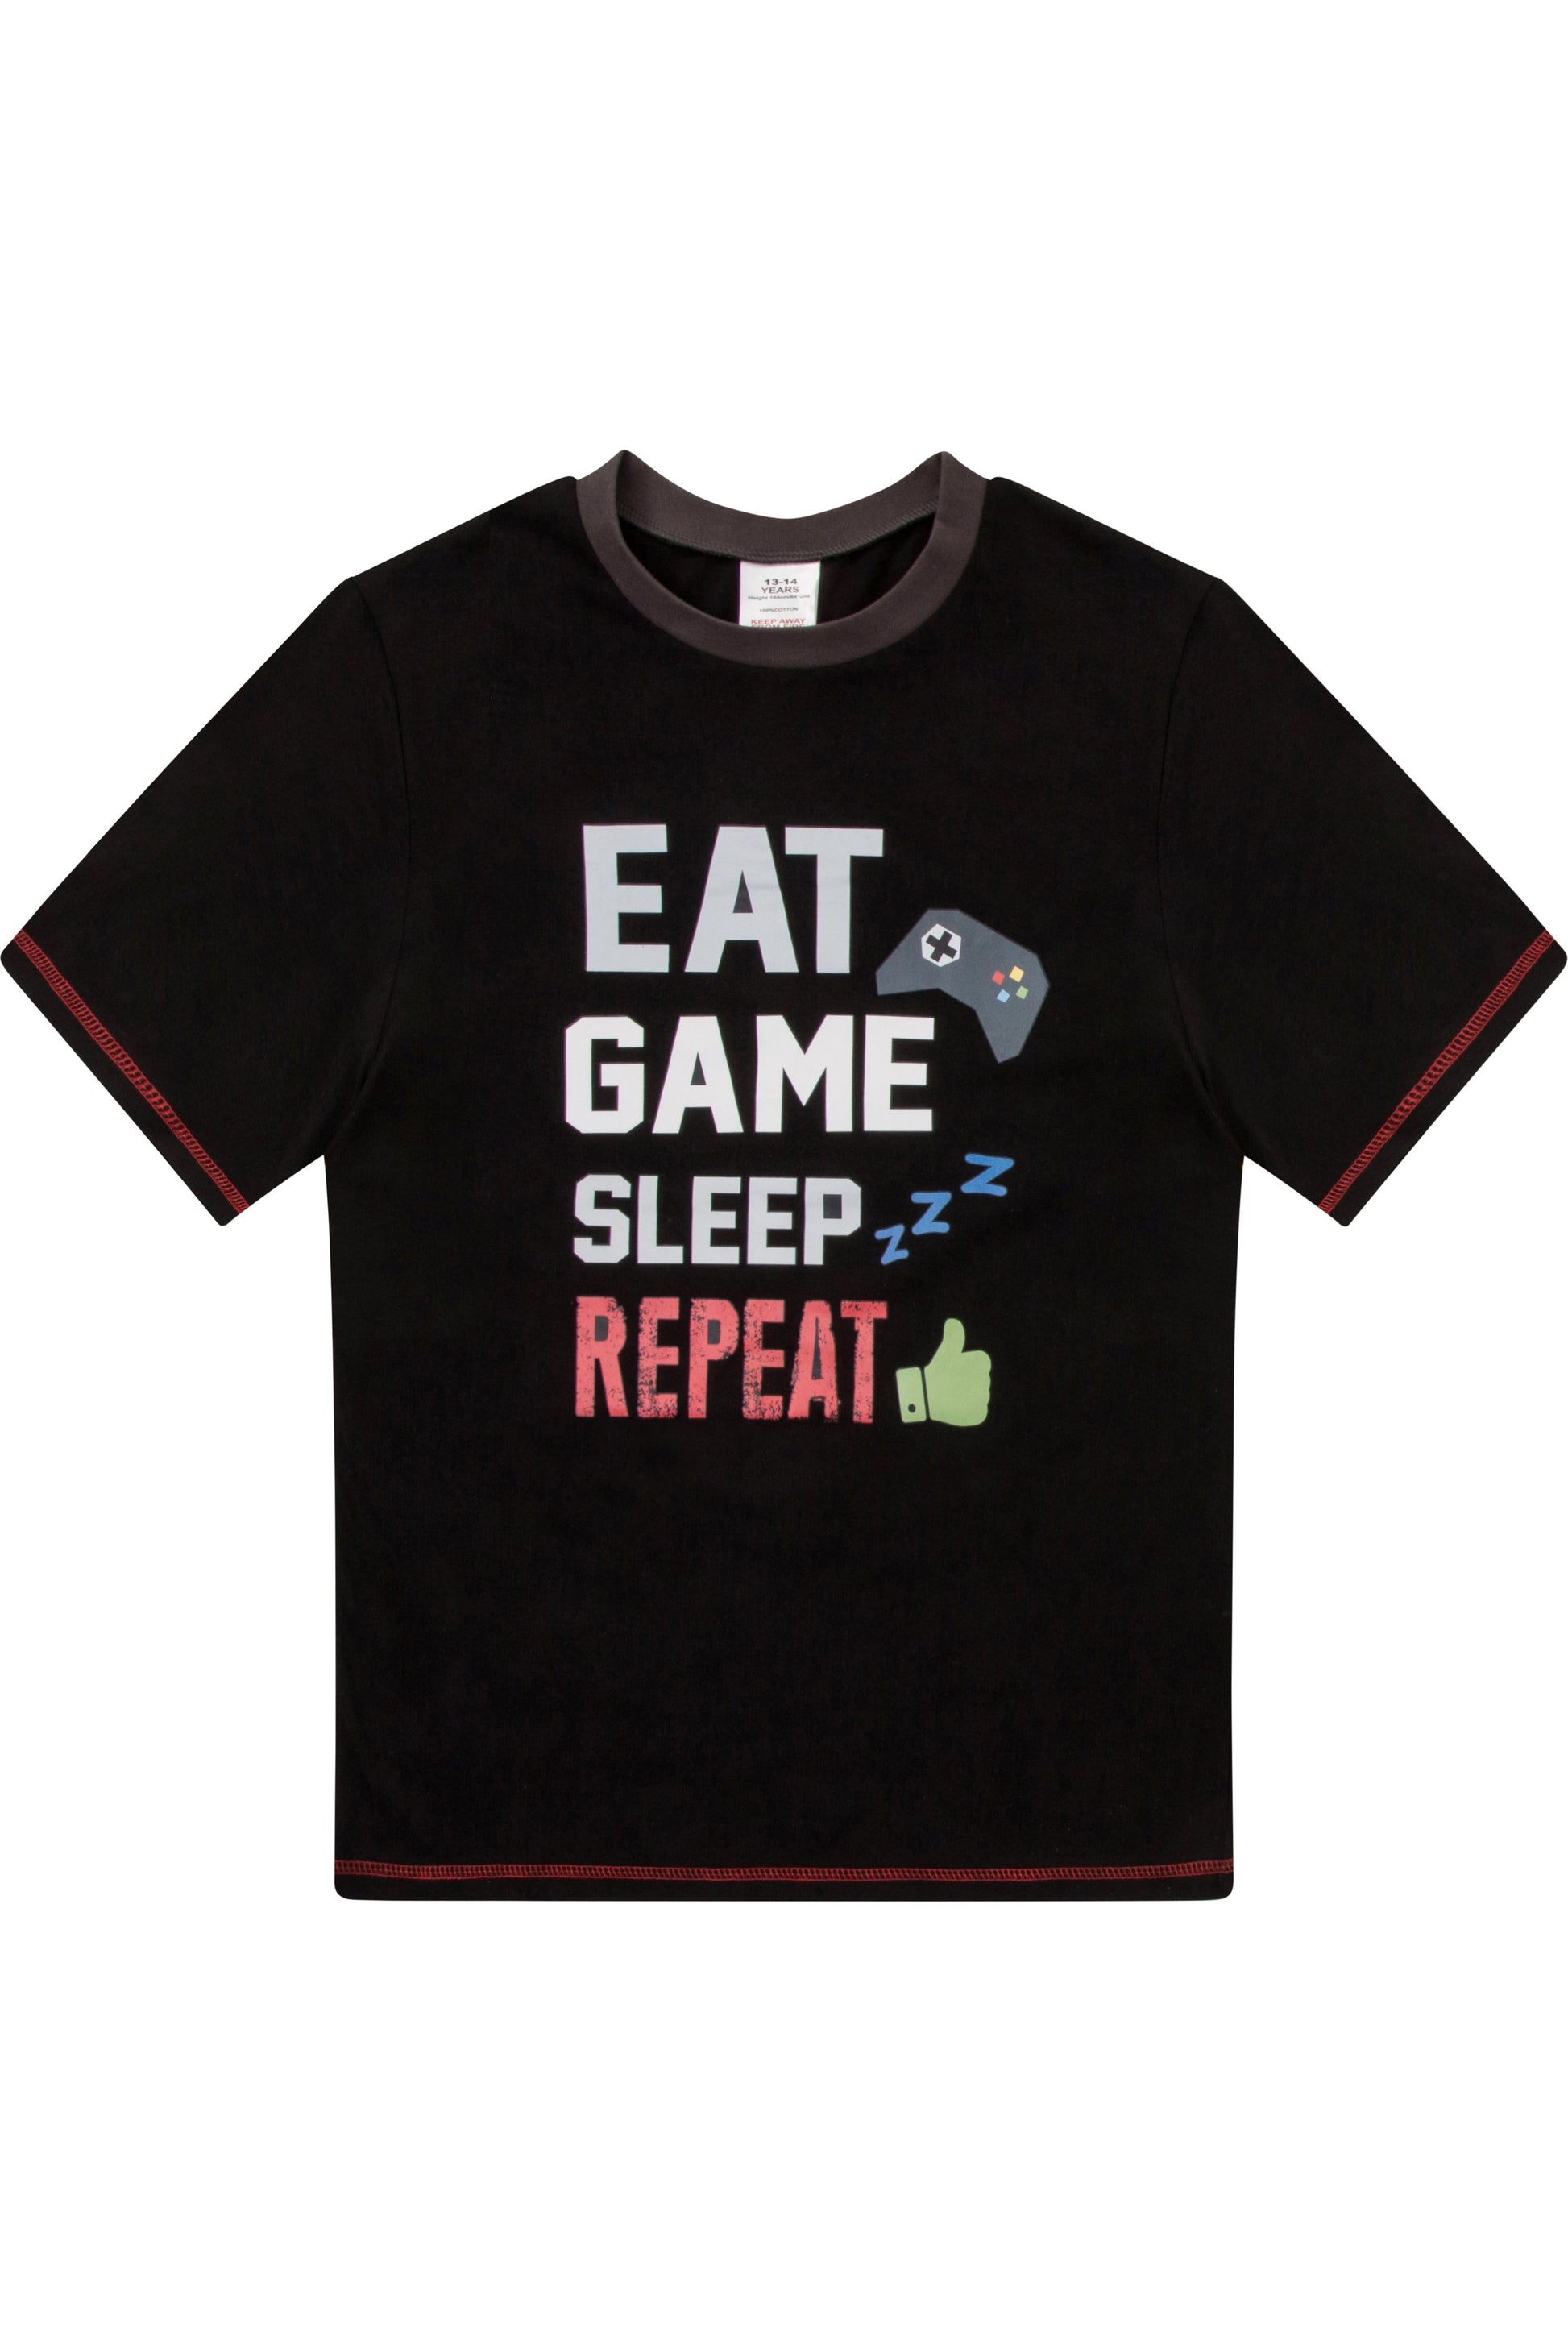 Boys Eat Game Sleep Short Pyjamas - Pyjamas.com